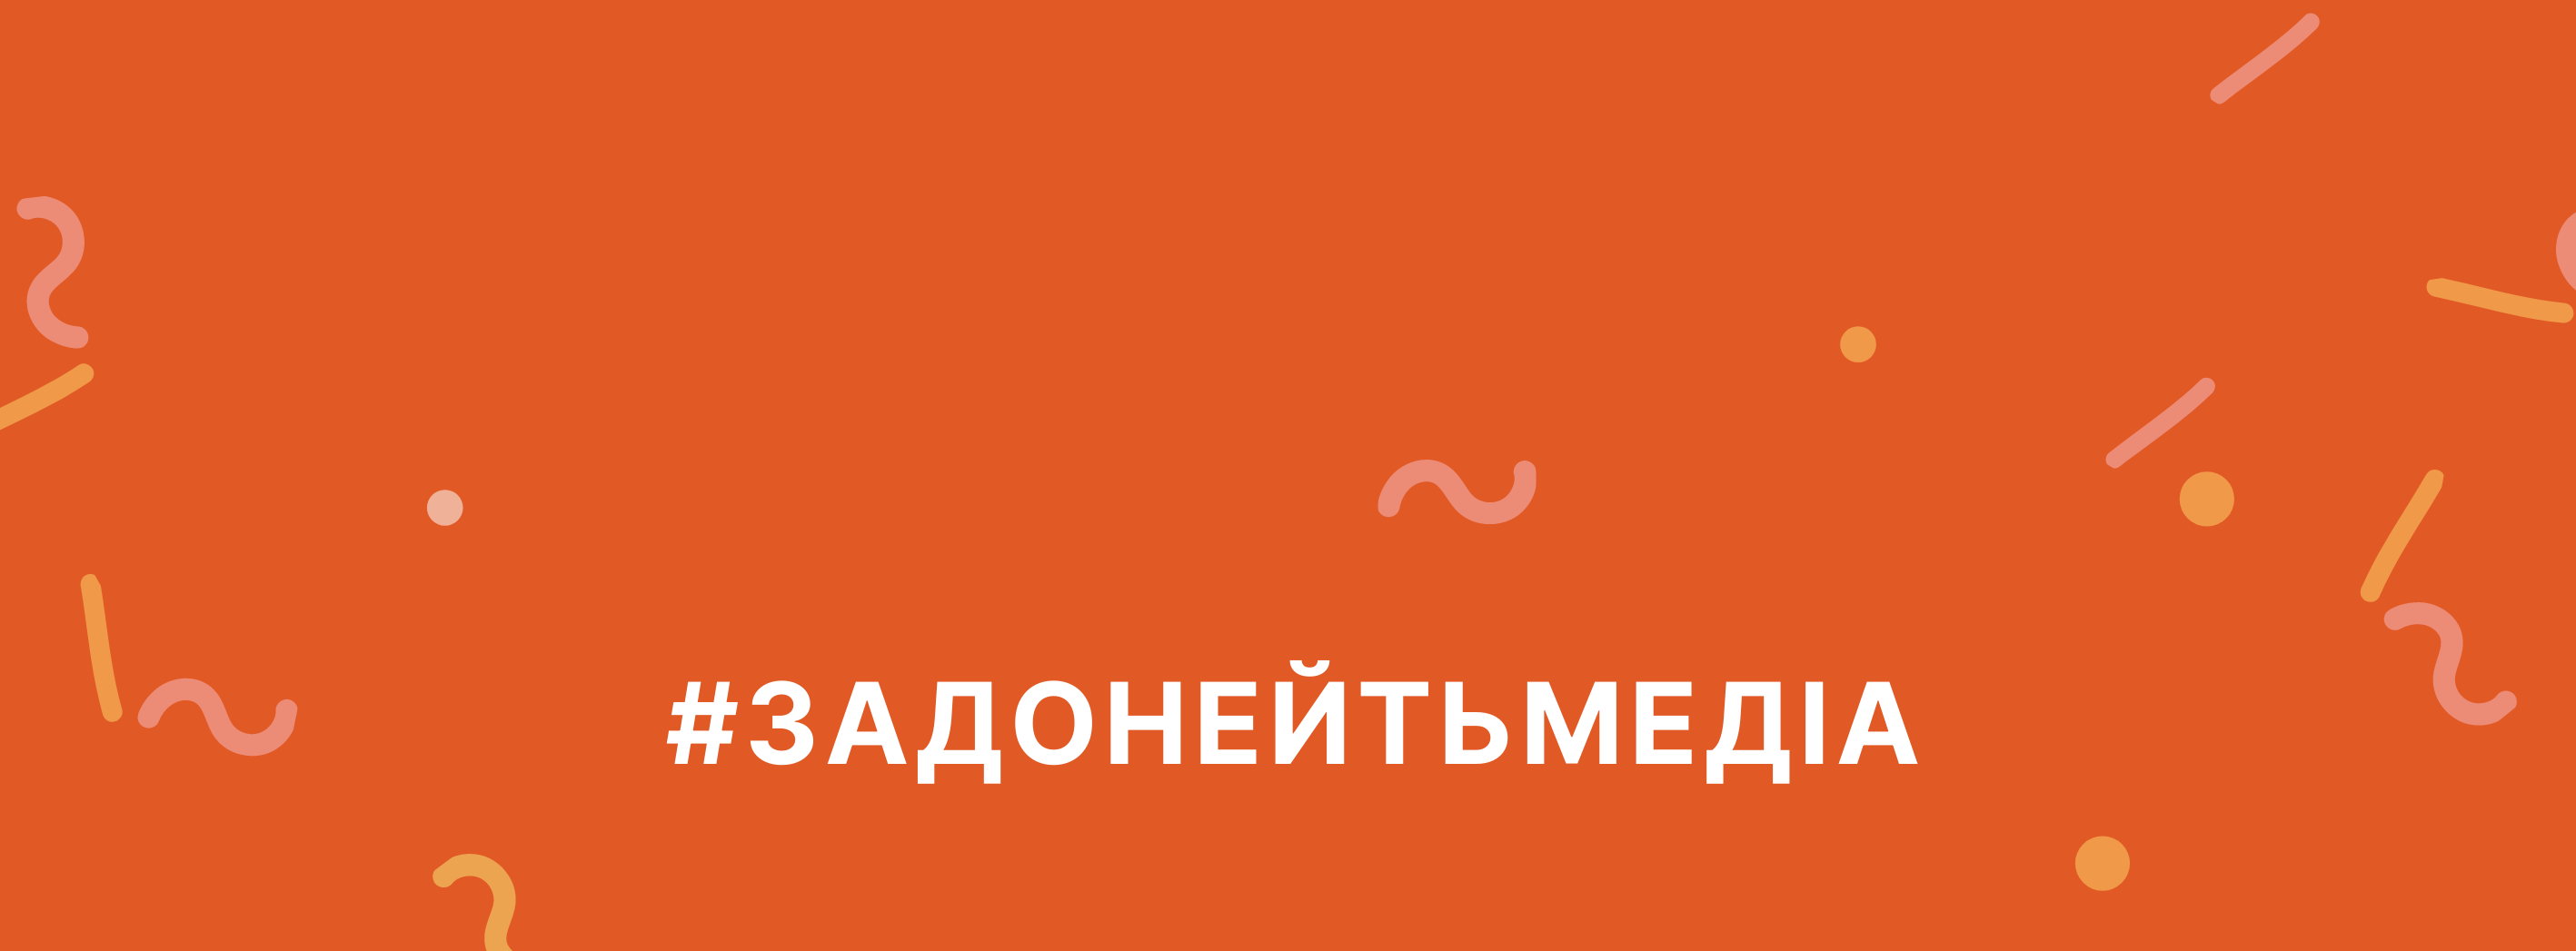 Львівський медіафорум запустив інформаційну кампанію з підтримки українських медіа